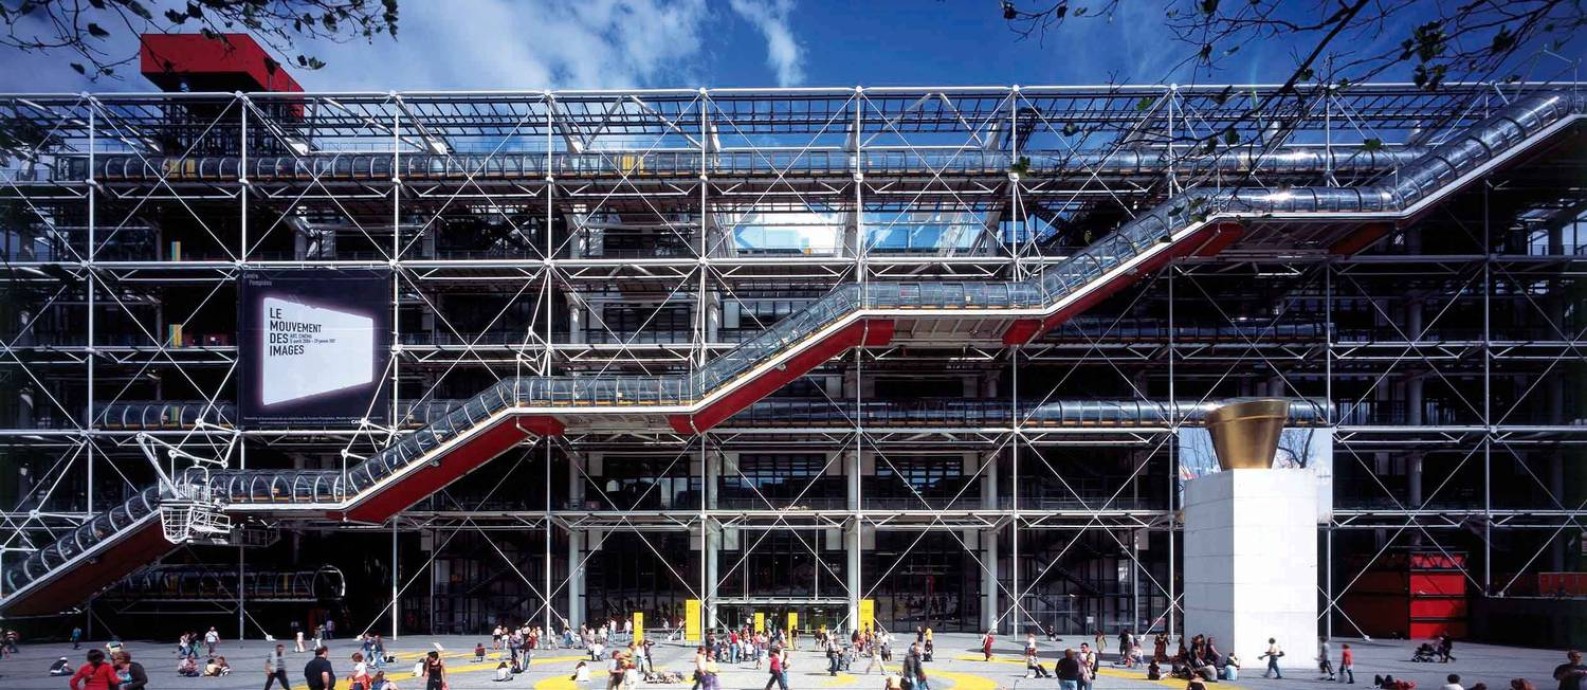 Fachada do Centre George Pompidou, em Paris, projetado entre 1971-1977 Foto: Katsuhisa Kida